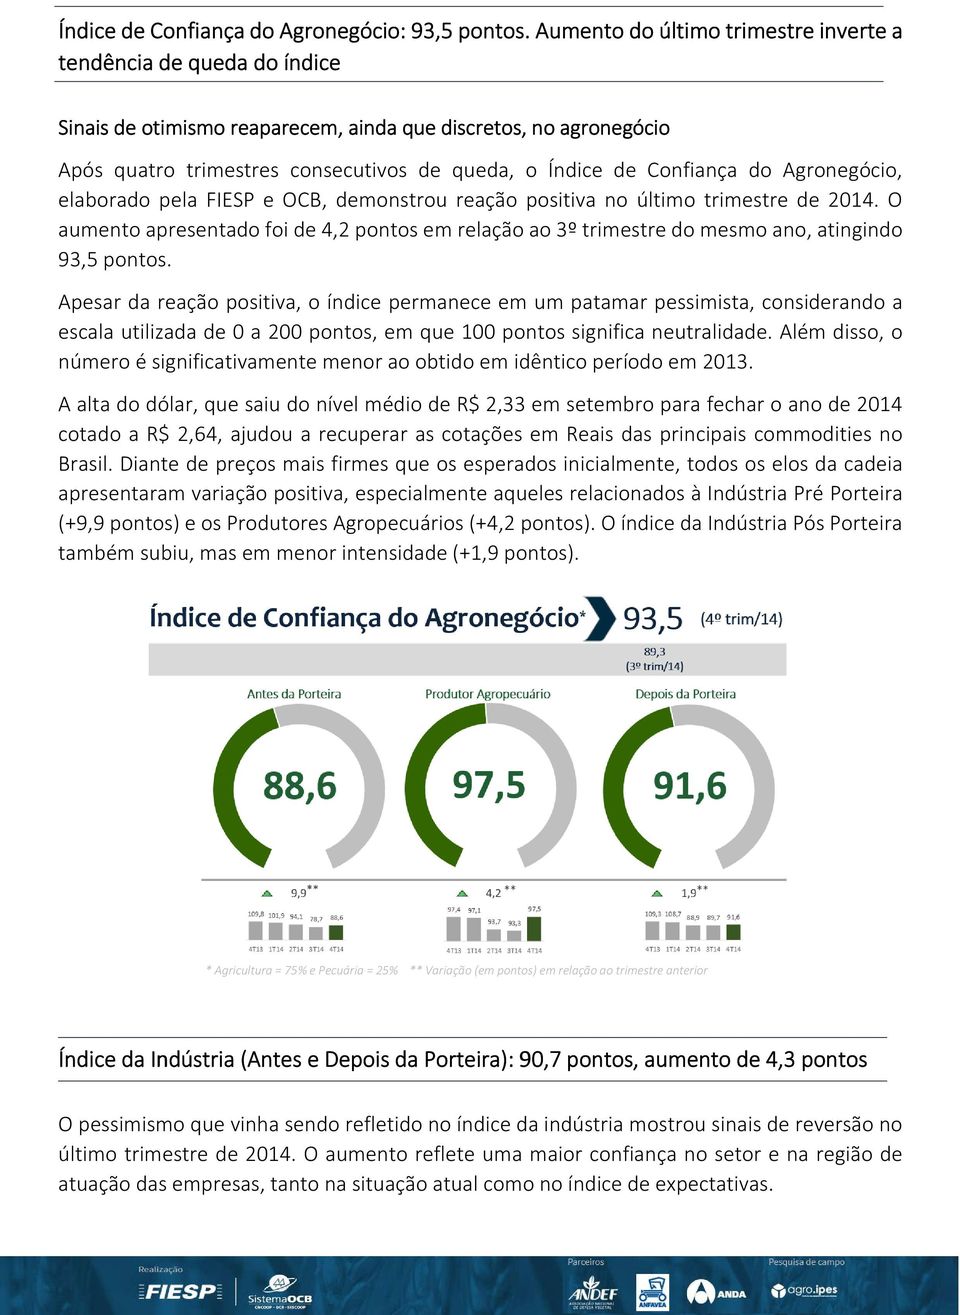 Confiança do Agronegócio, elaborado pela FIESP e OCB, demonstrou reação positiva no último trimestre de 2014.